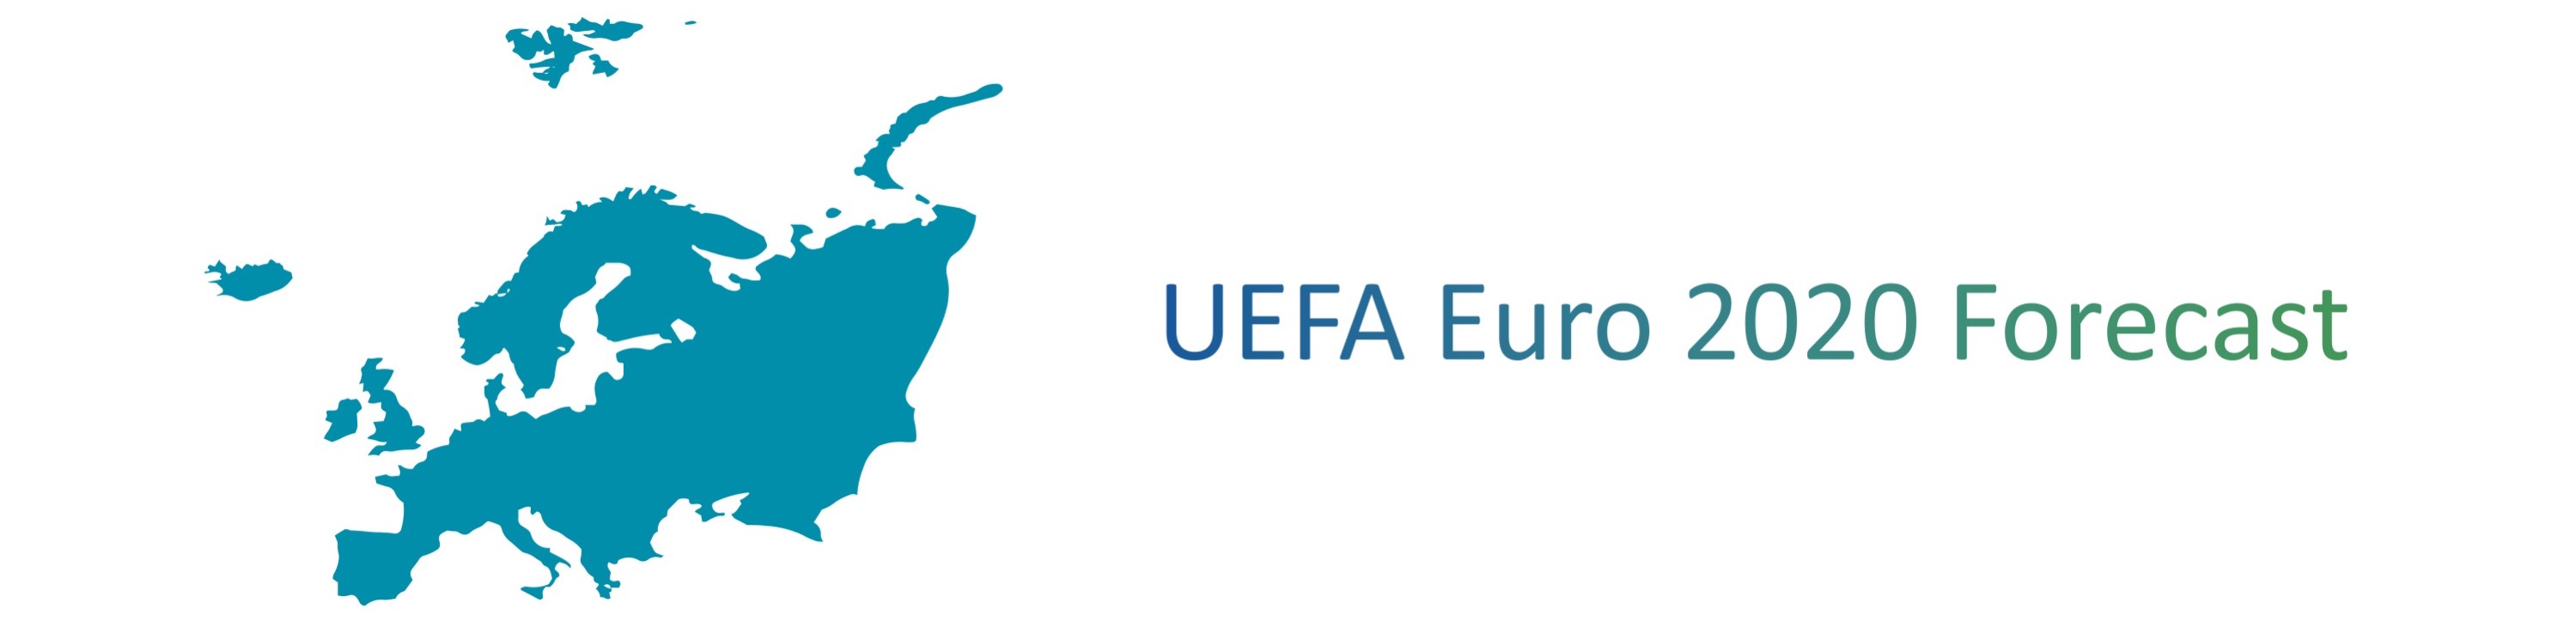 "UEFA Euro 2020 Forecast"